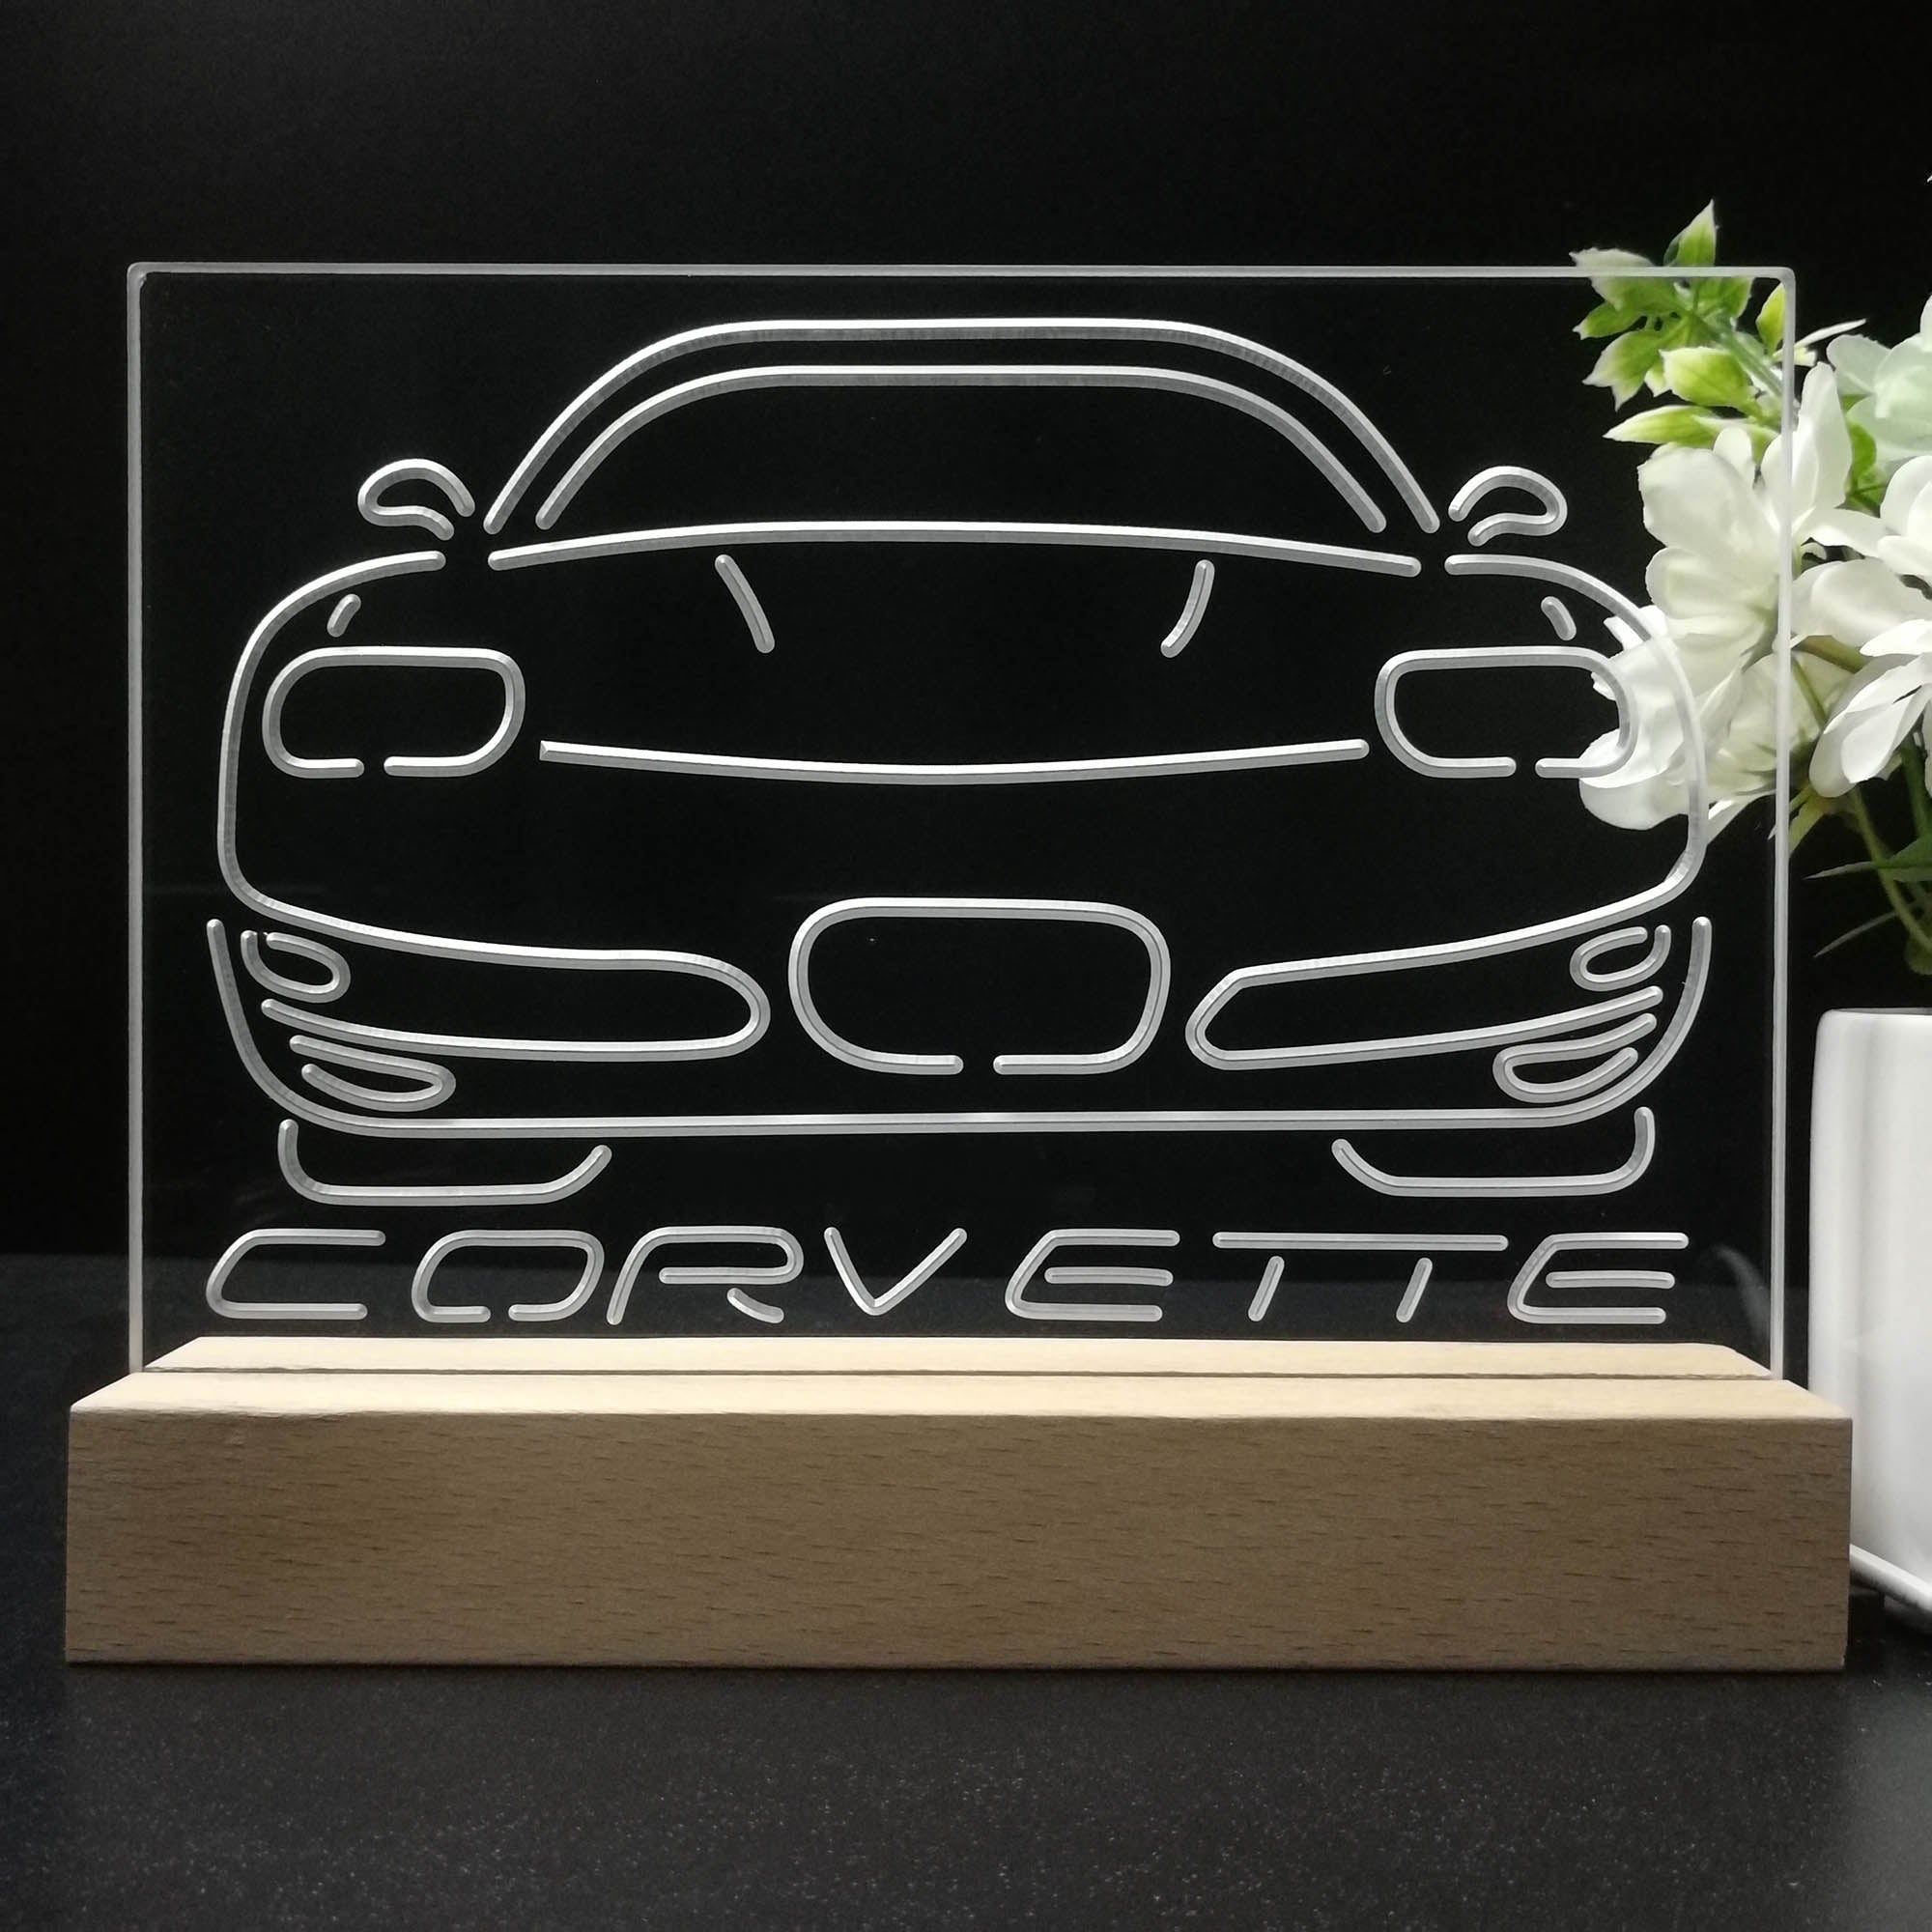 Corvette Car 3D LED Illusion Night Light